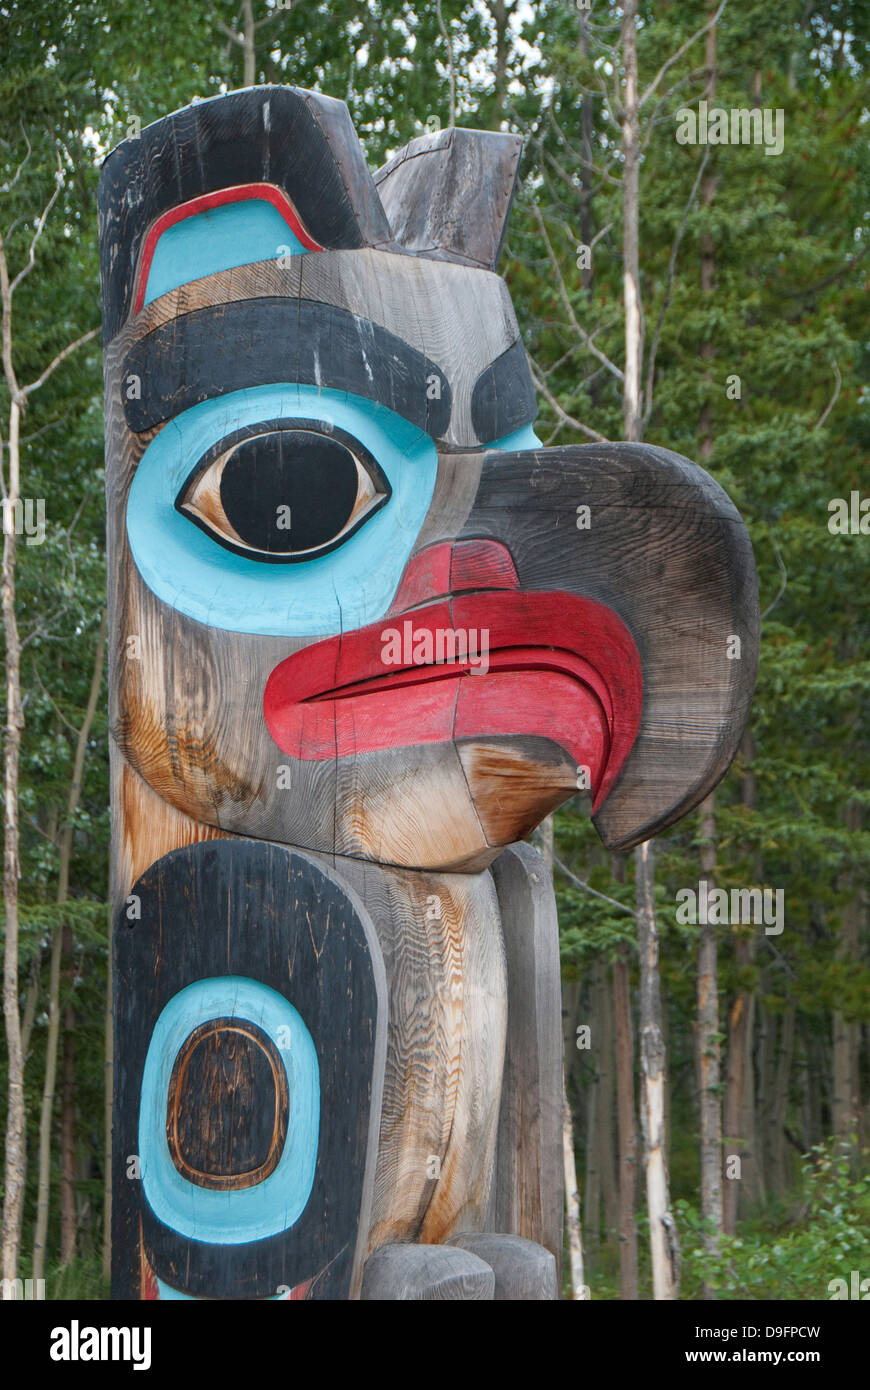 Totem pole with eagle image, Tlingit Heritage Center, Teslin, Yukon, Canada Stock Photo